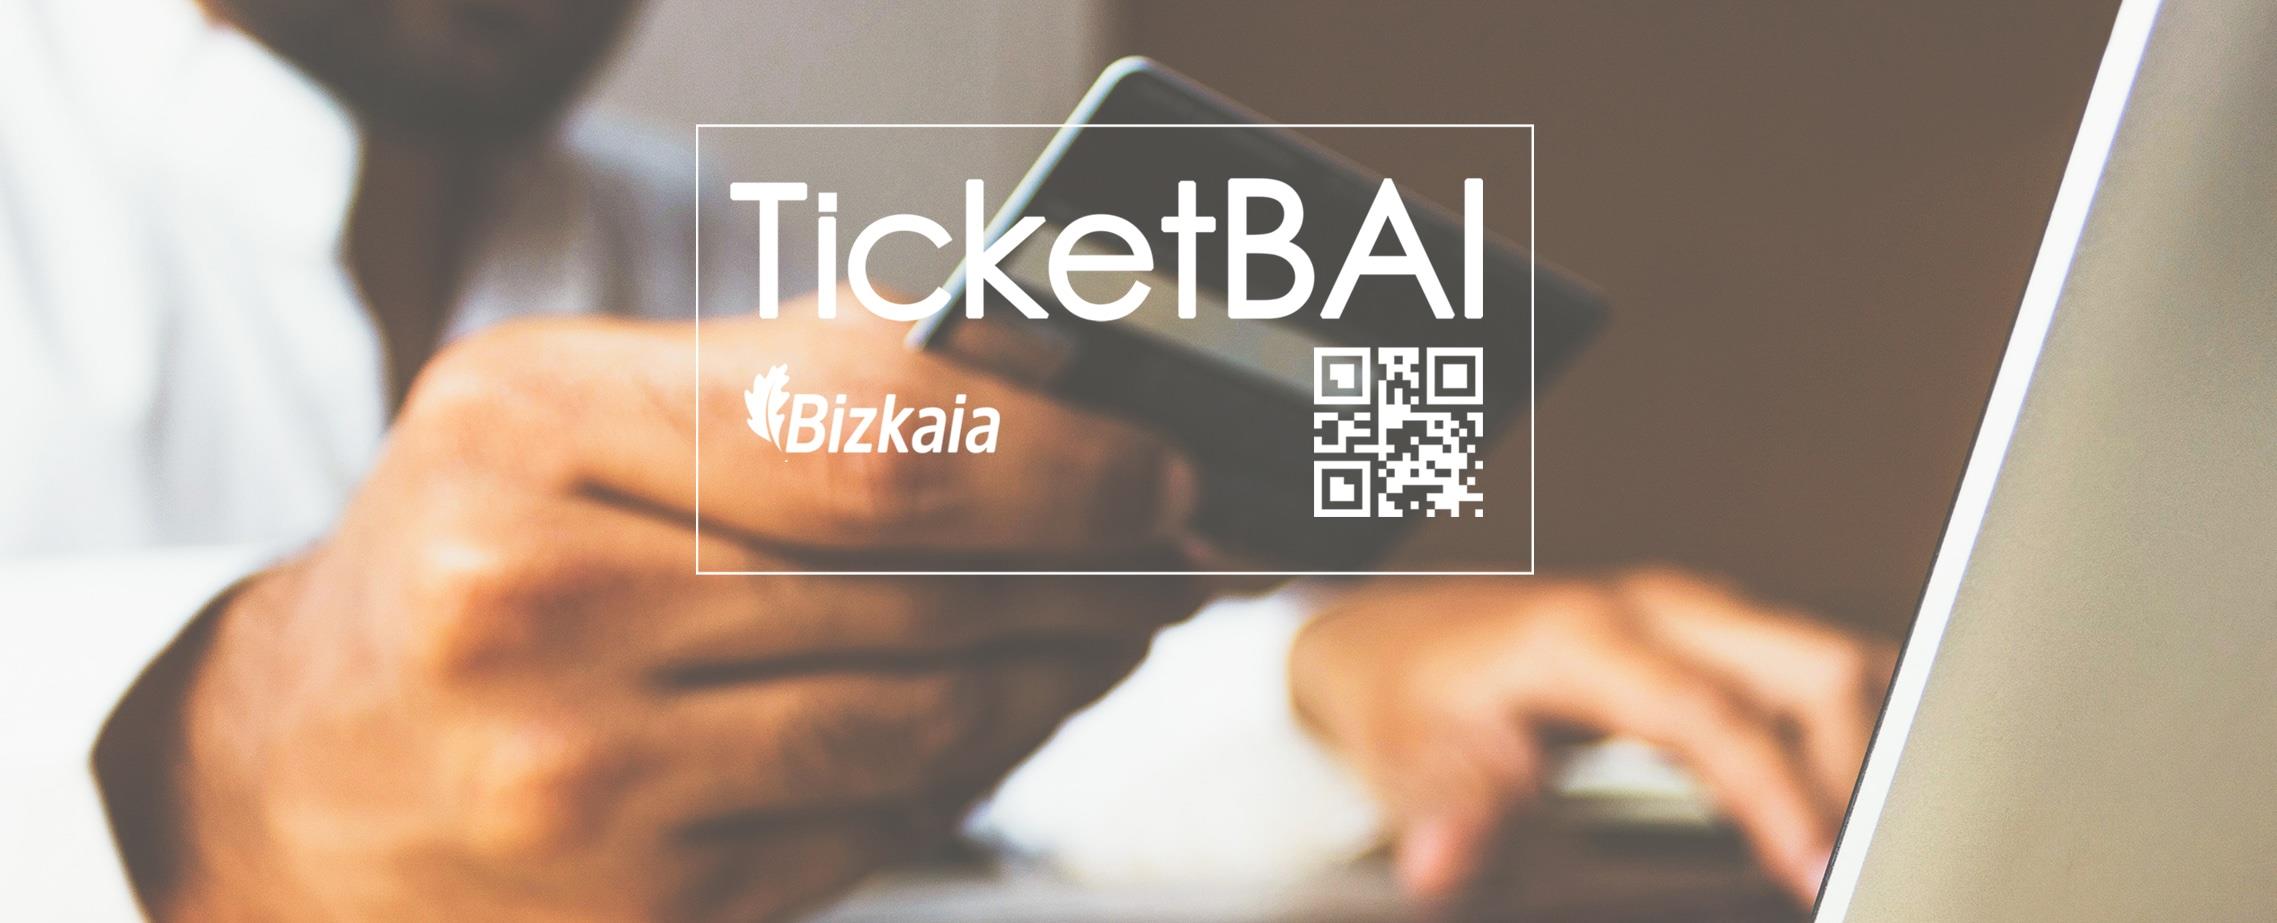 ¿Qué es TicketBAI y cómo nos afecta?